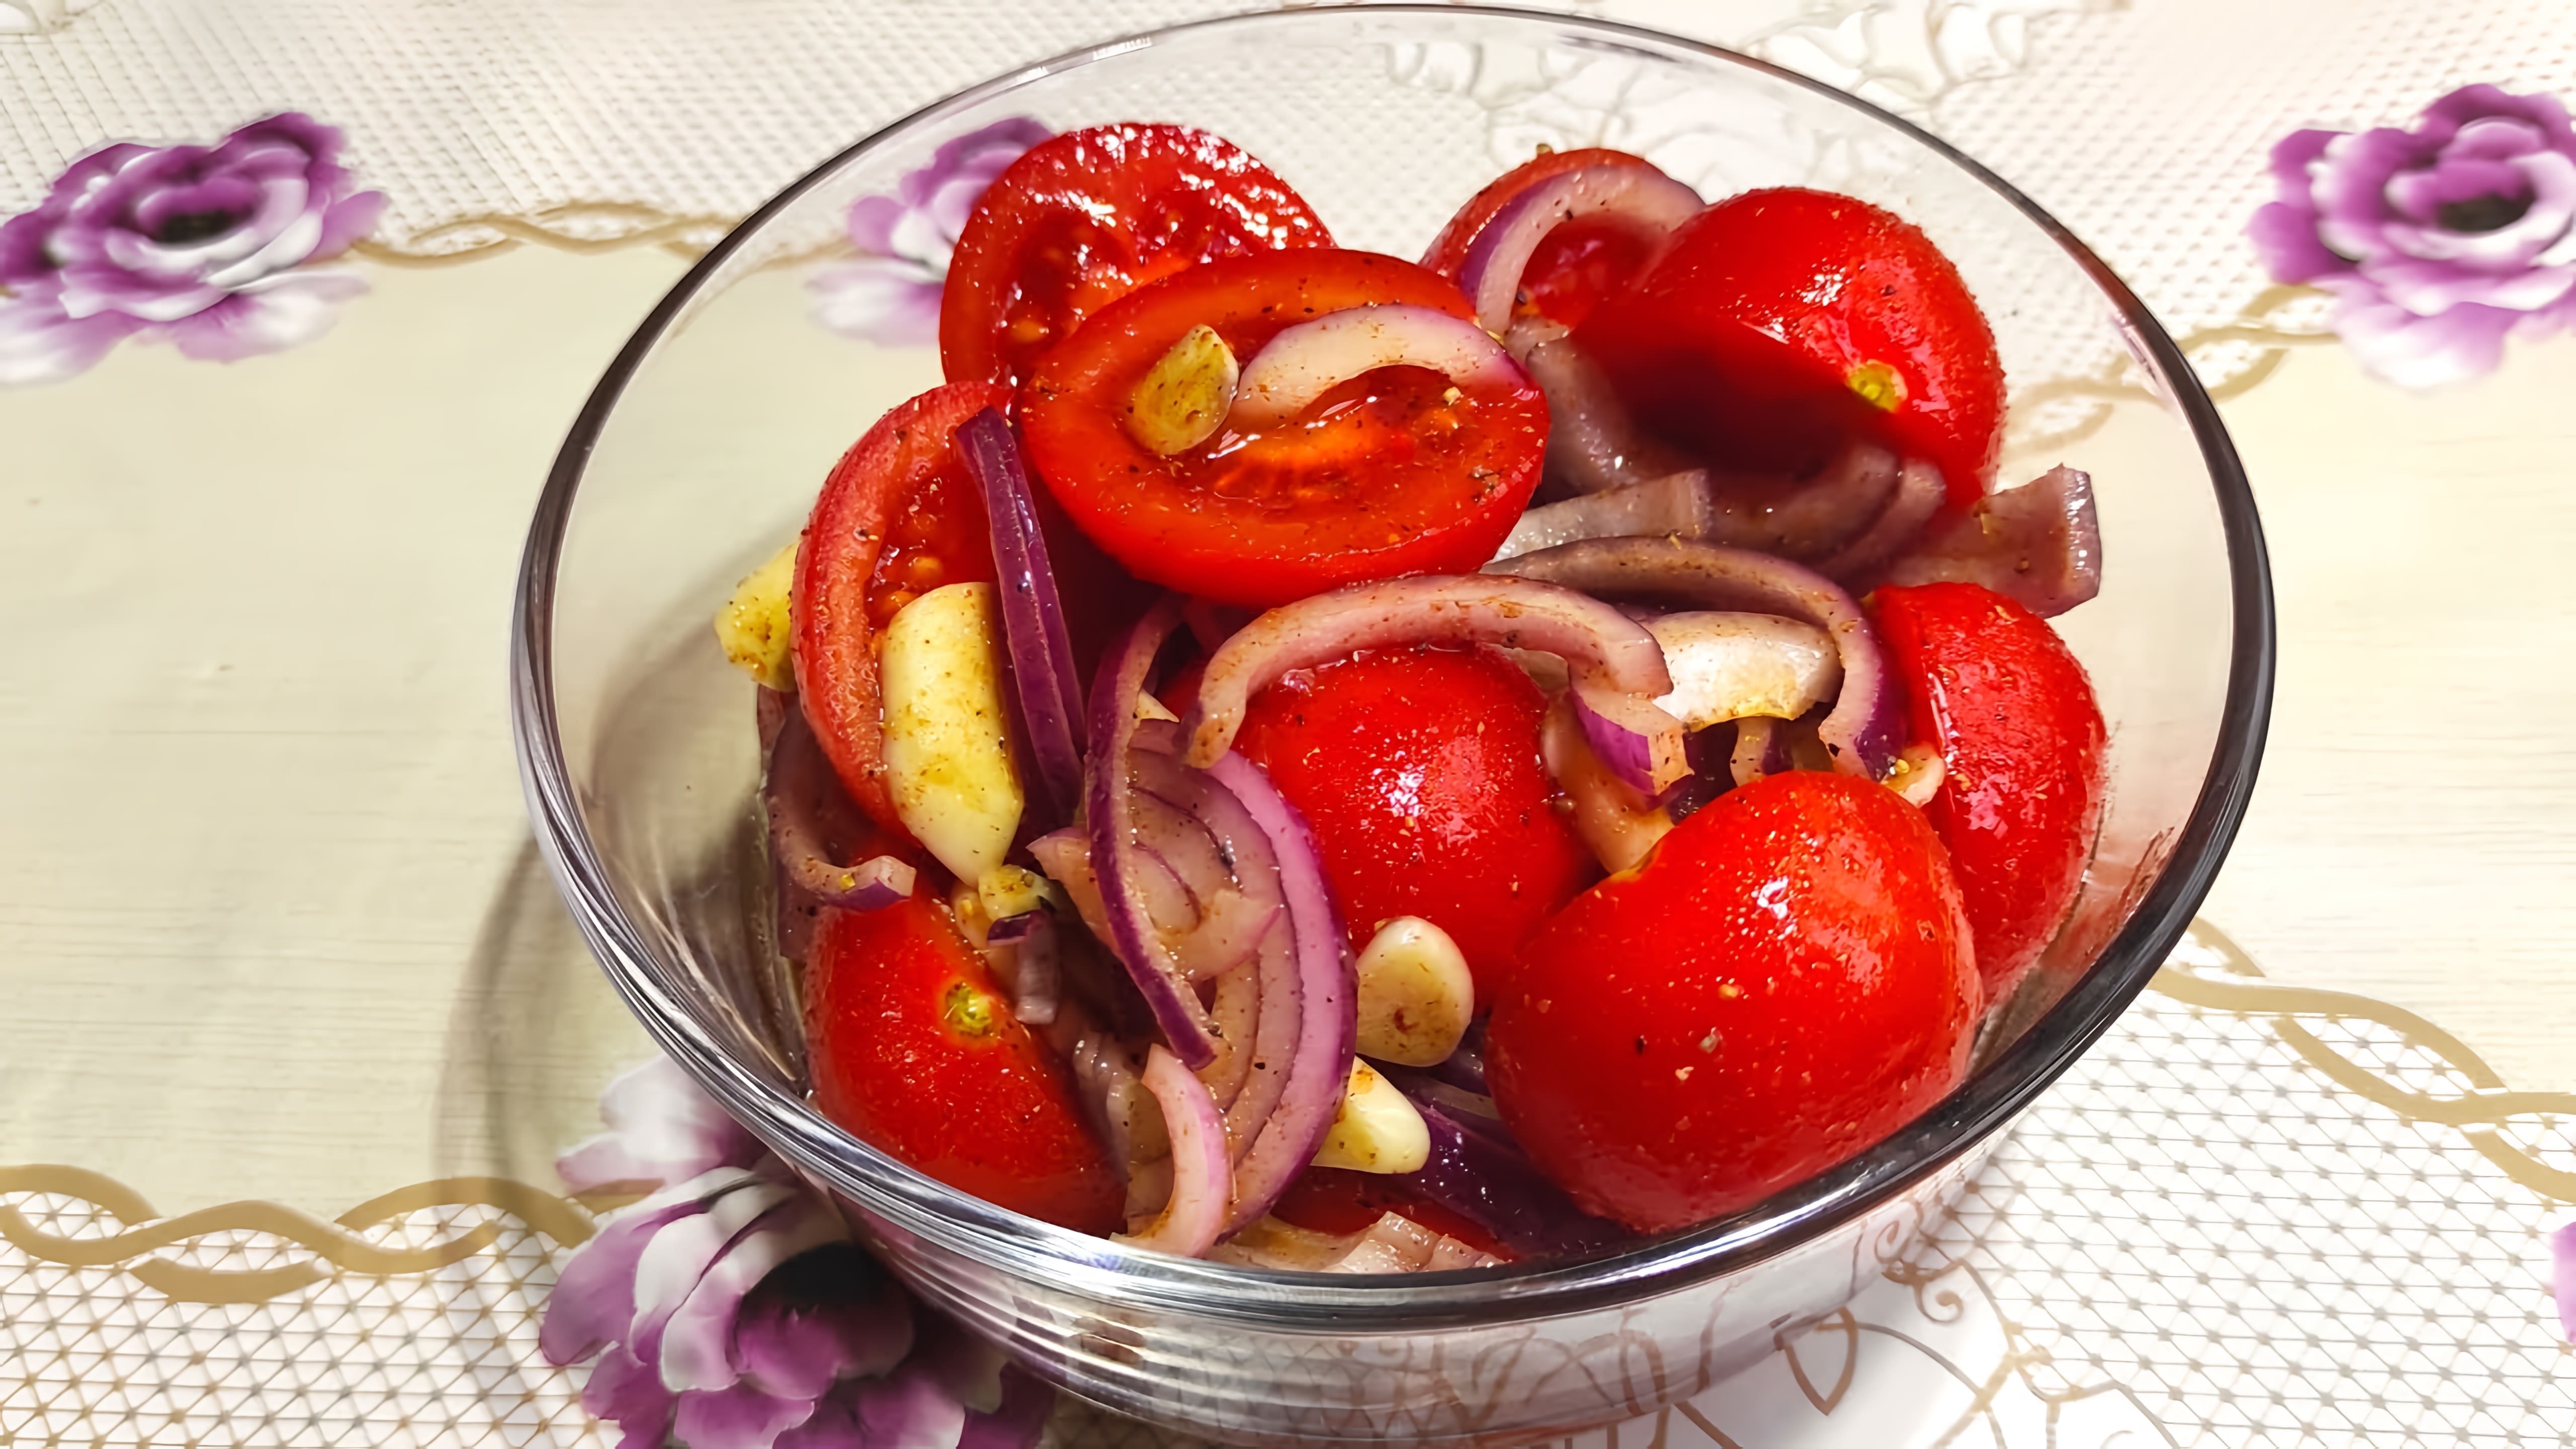 Маринованные помидоры Черри - это вкусная и полезная закуска, которую можно приготовить на праздничный стол